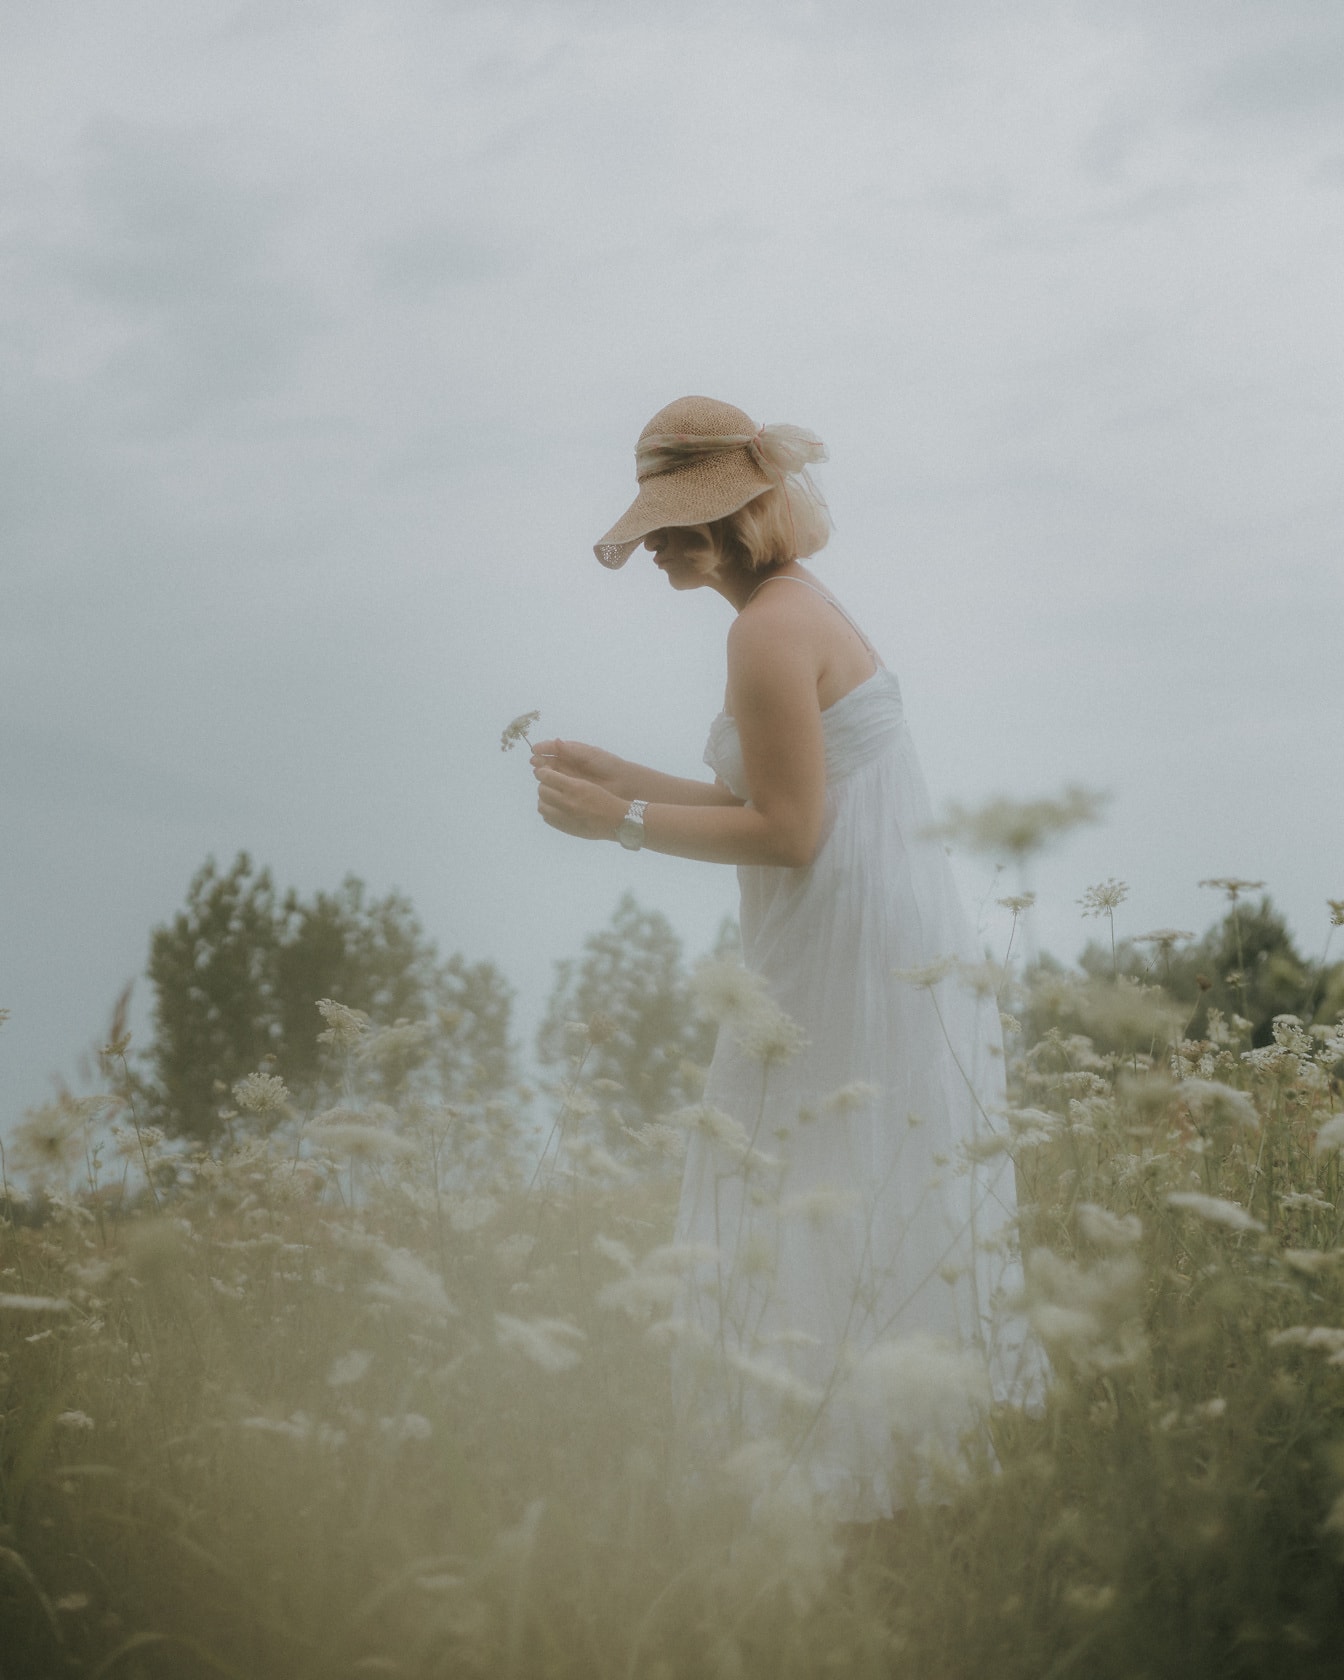 Junge Frau im klassischen weißen Kleid auf der Wiese